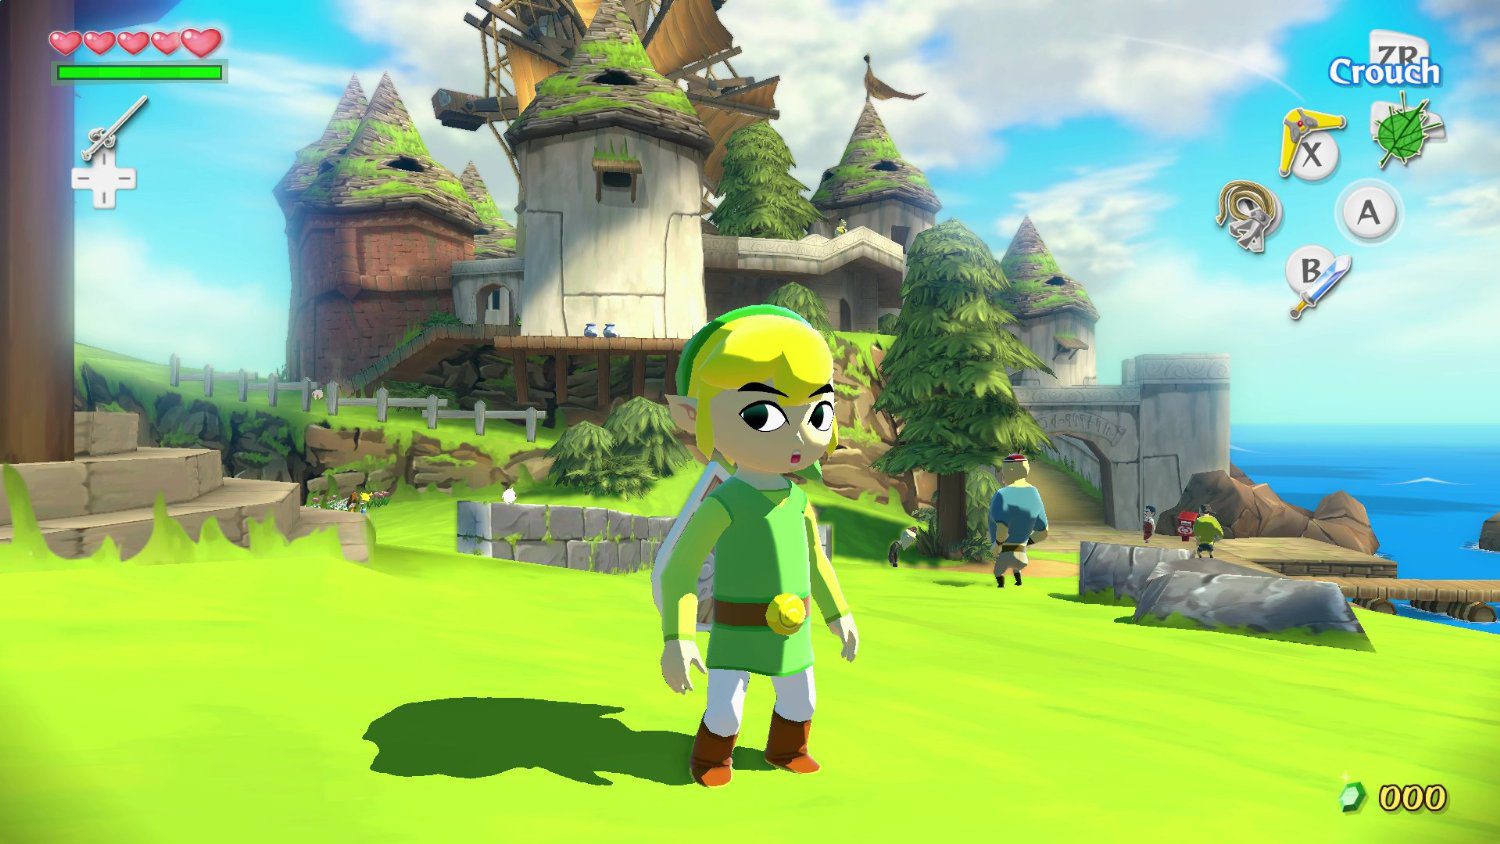 Zelda: Wind Waker HD - Gameplay & New Features Trailer (Wii U